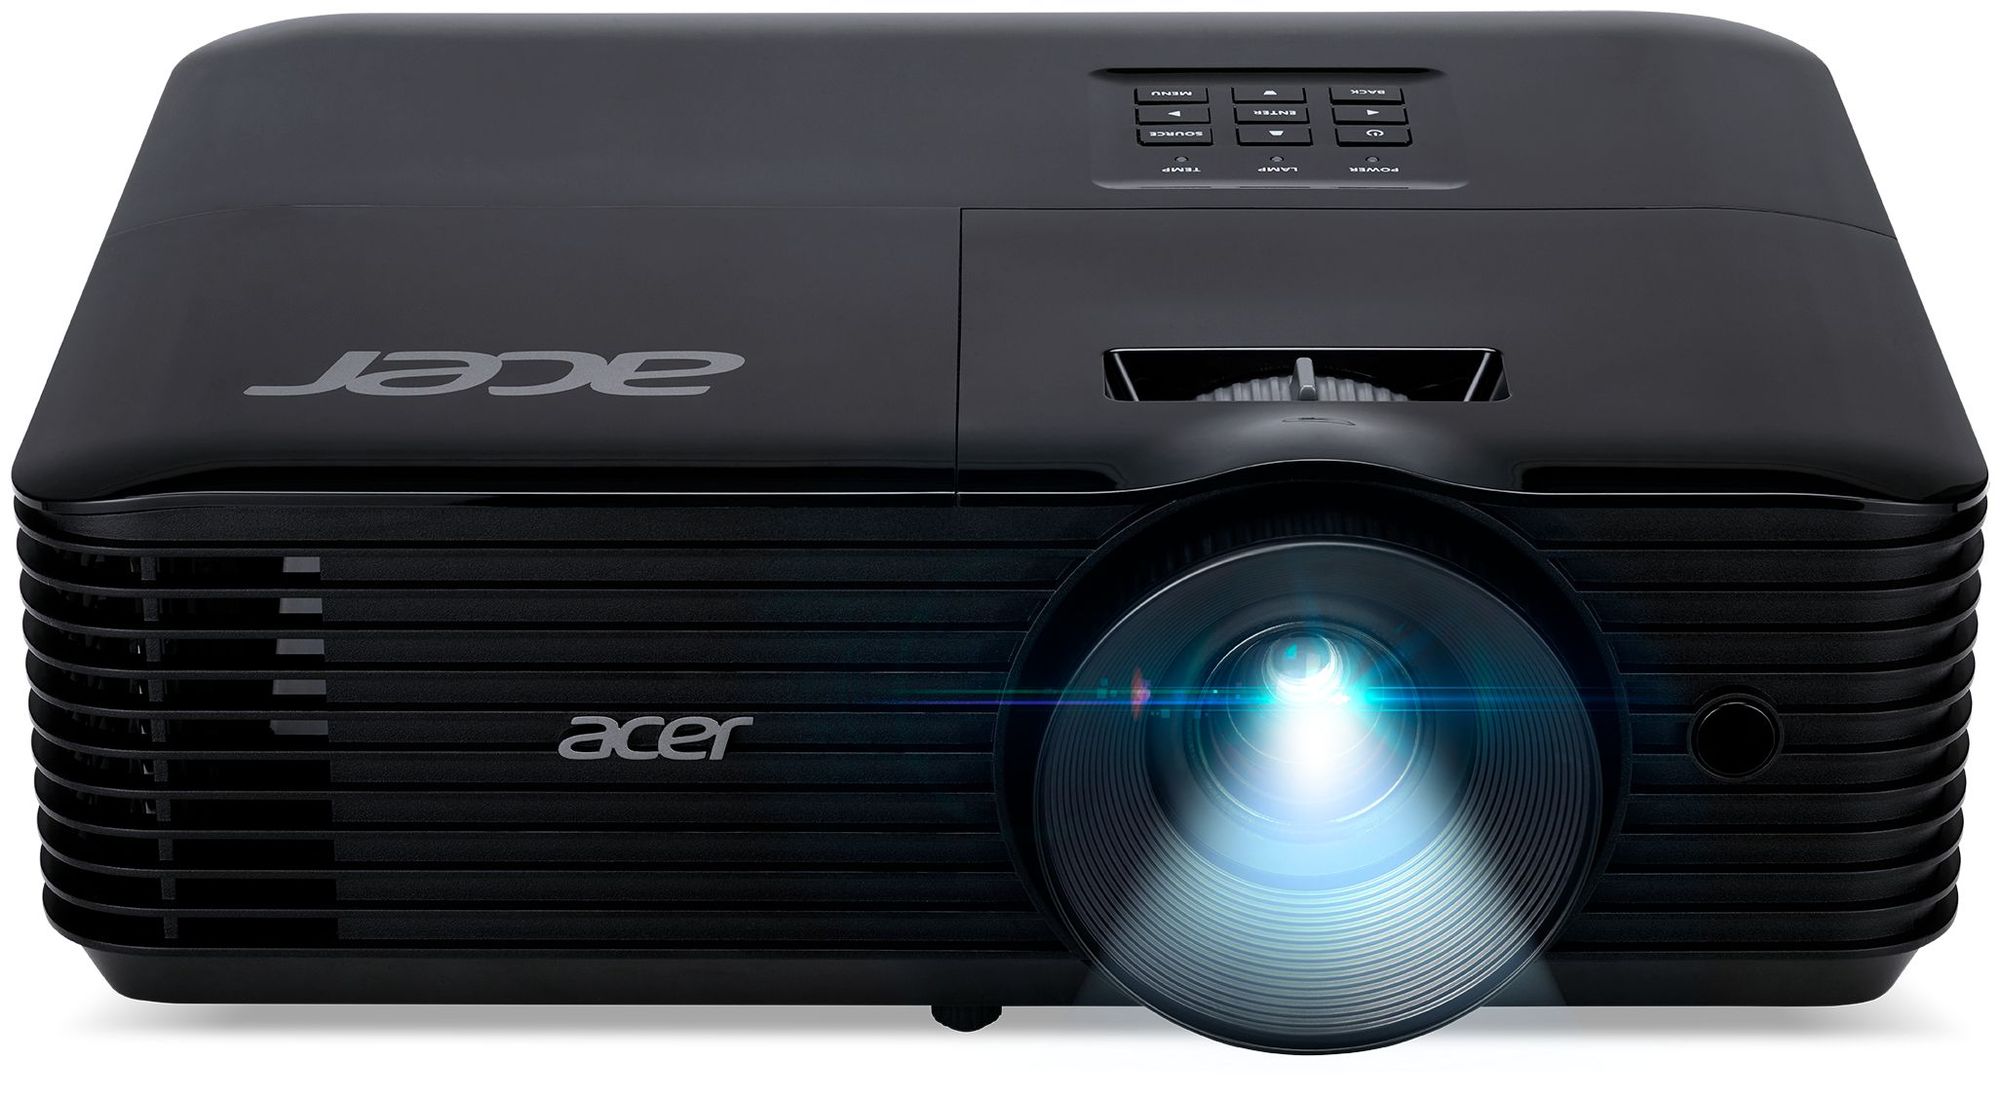 Проектор Acer X1328Wi DLP 4500Lm (MR.JTW11.001) проектор acer h6555bdki dlp 4500lm 1920x1080 10000 1 ресурс лампы 6000часов 1xusb typea 2x 10044